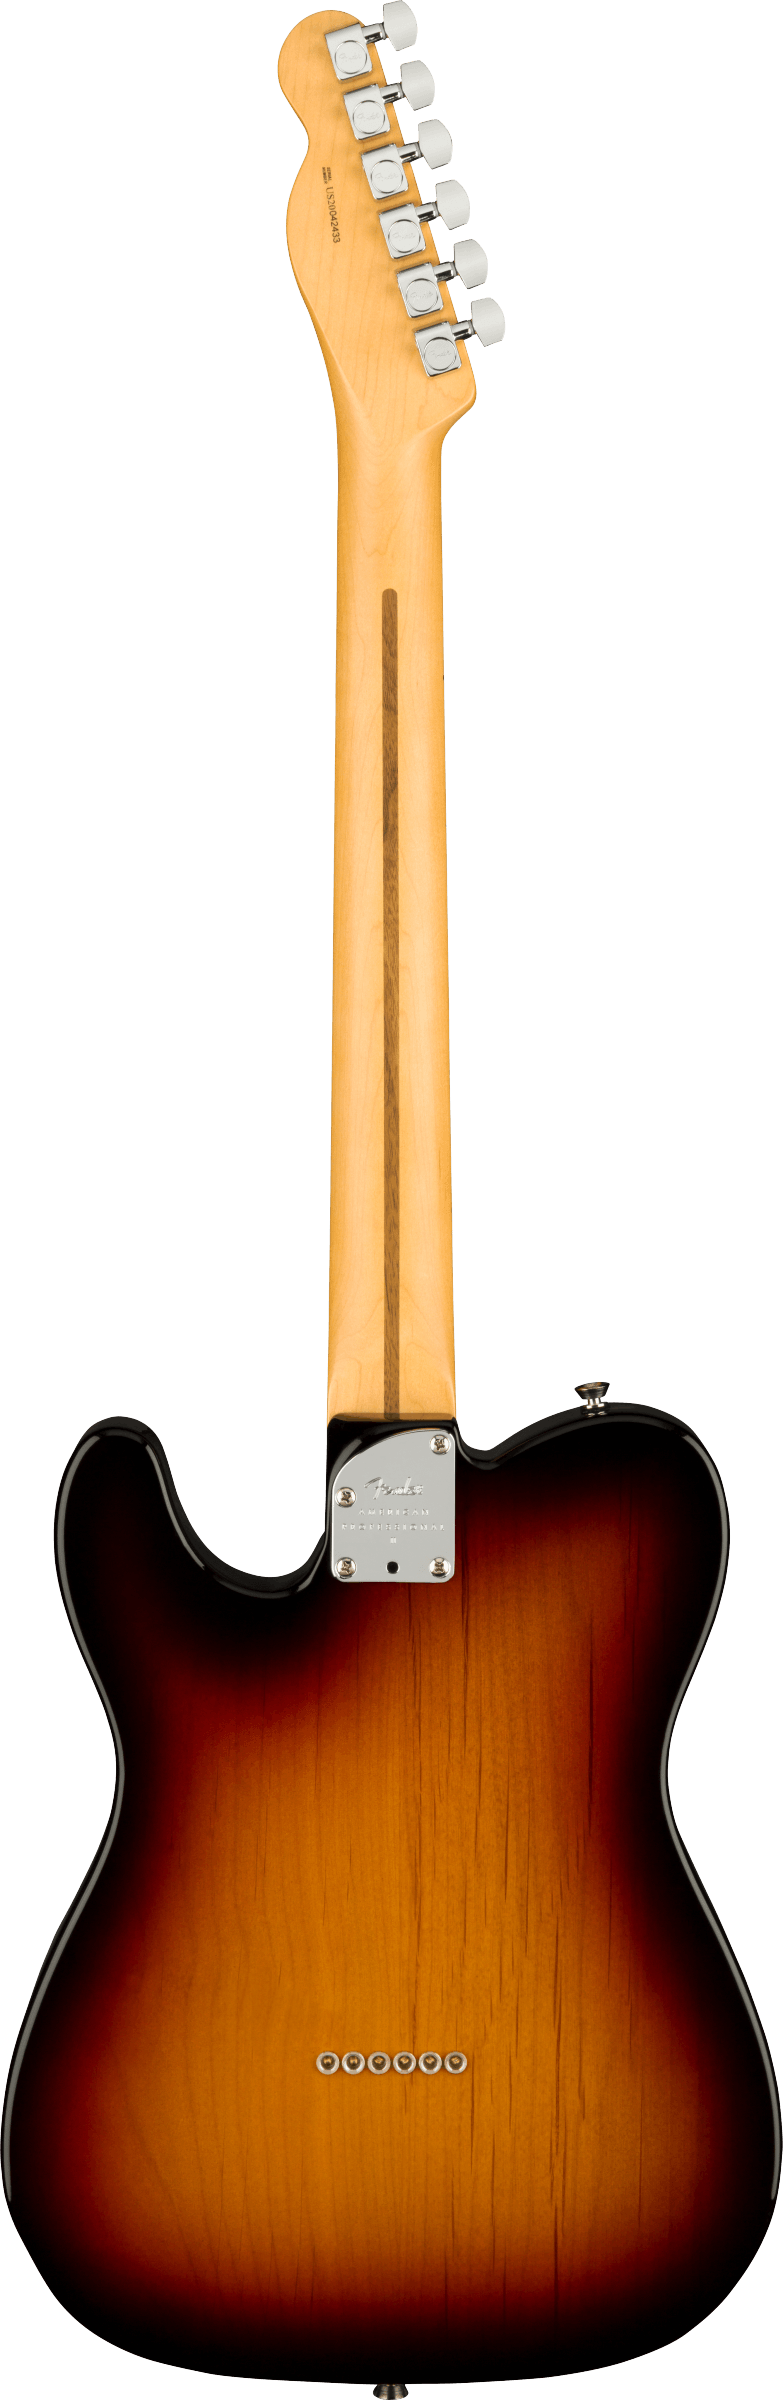 Back of Fender Telecaster electric guitar in 3 Color Sunburst Tone Shop Guitars DFW